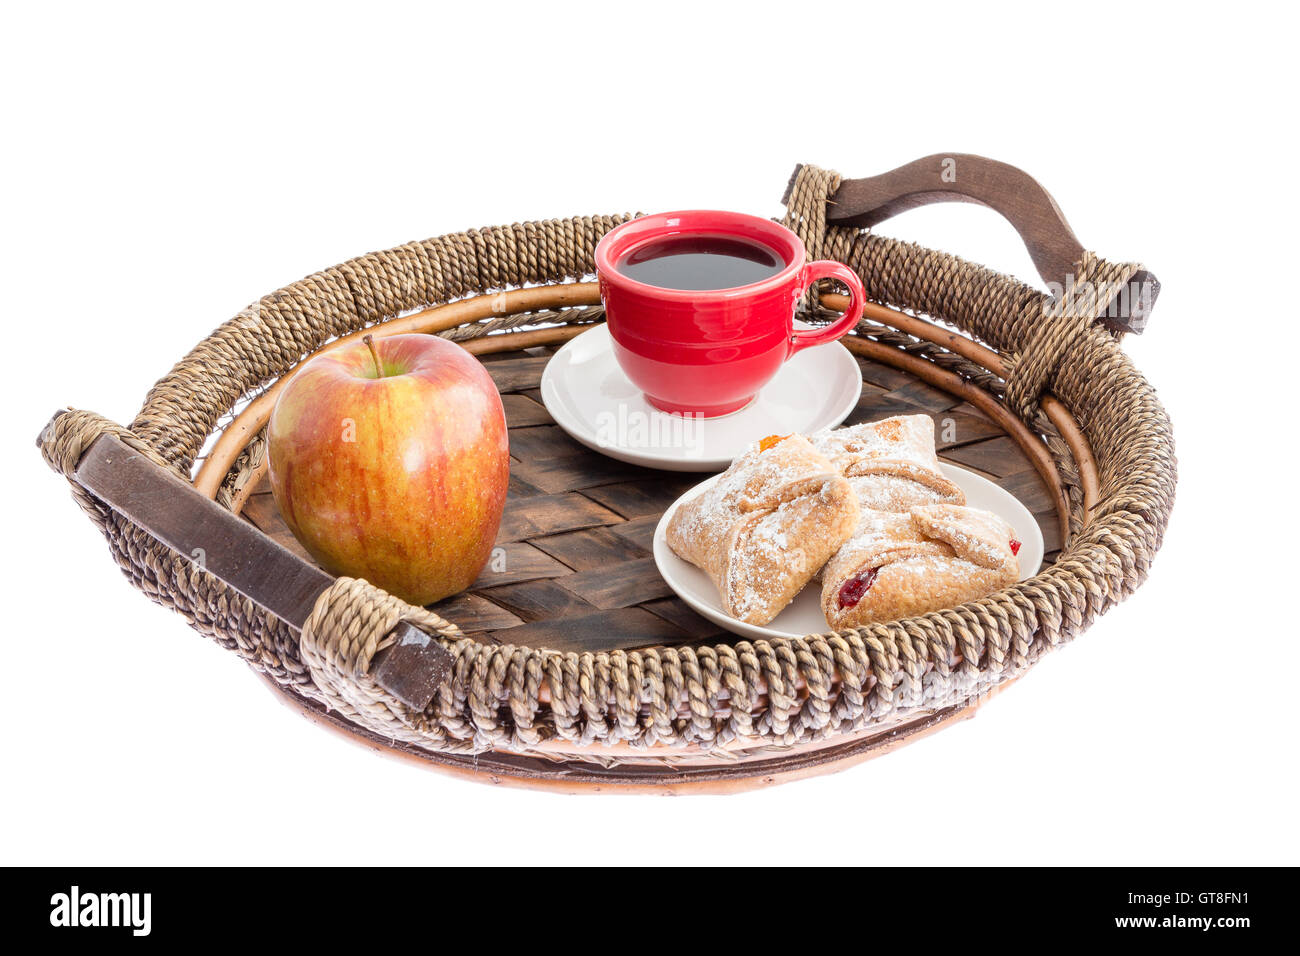 Pomme fraîche, pâtisseries croisé de fromage, de fraise et de pêche et une tasse de café espresso servi sur un osier rustique Banque D'Images